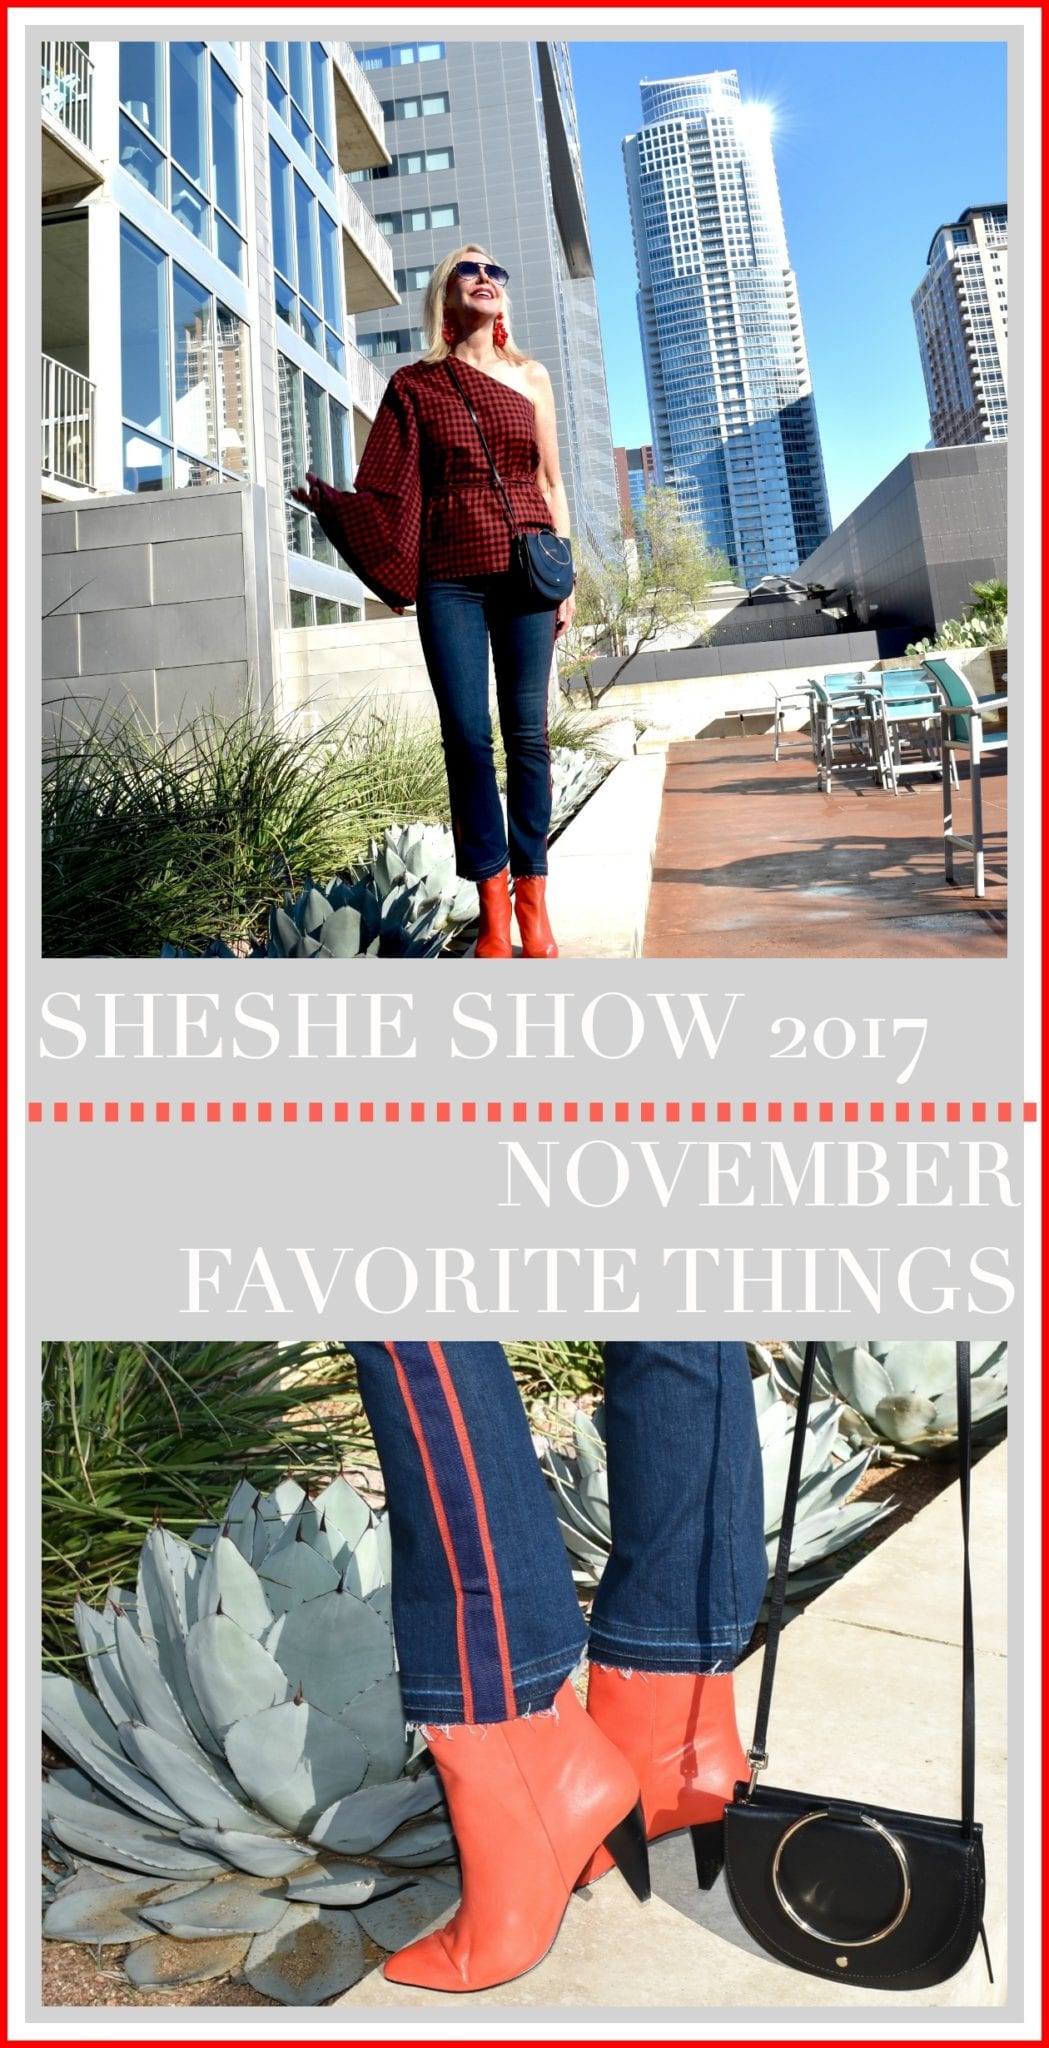 Favorite things, november, sheshe show 